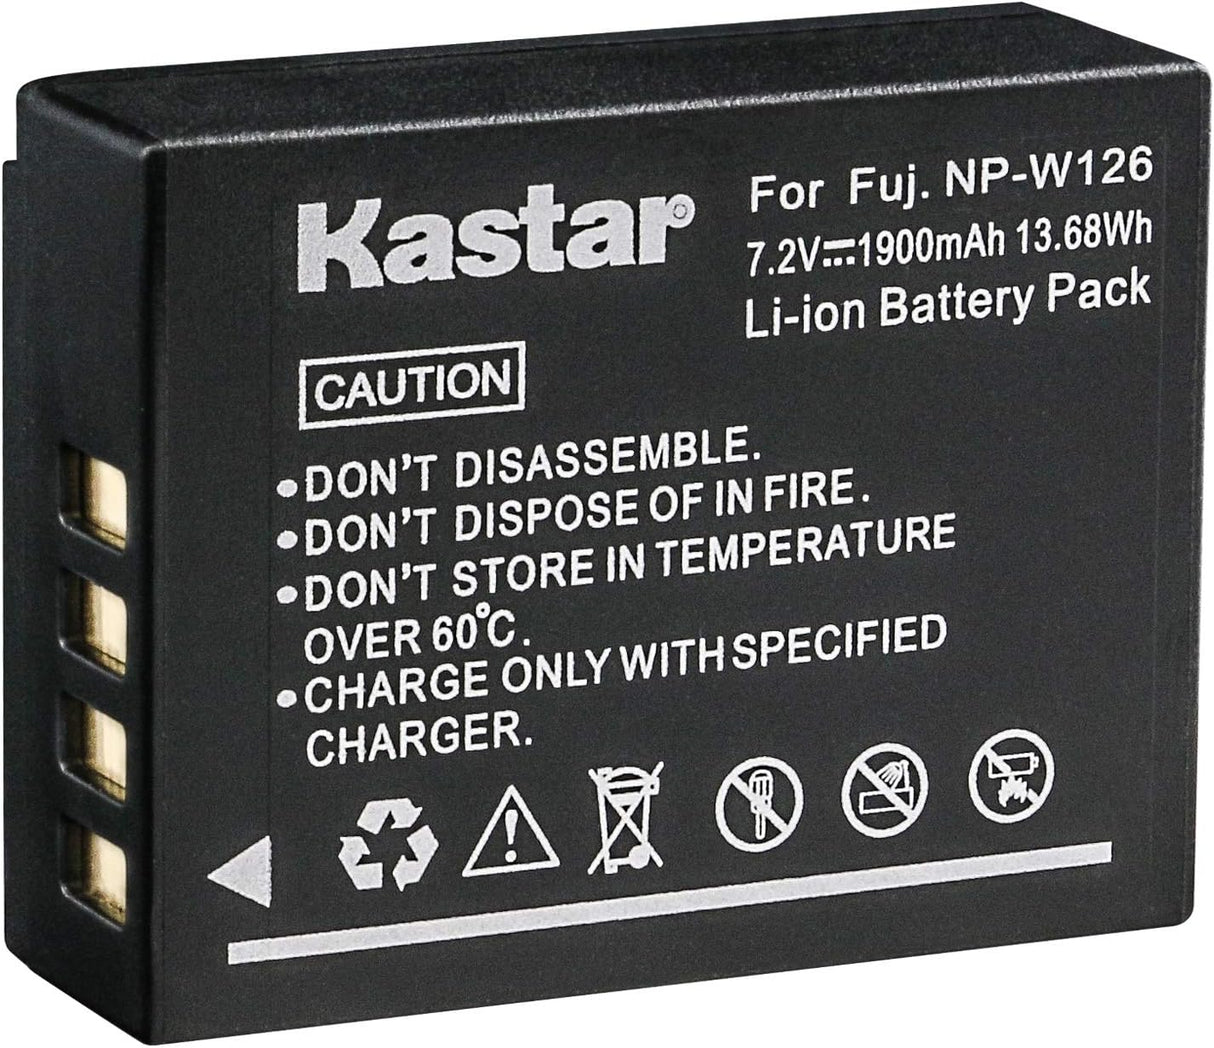 Kastar NP-W126 battery